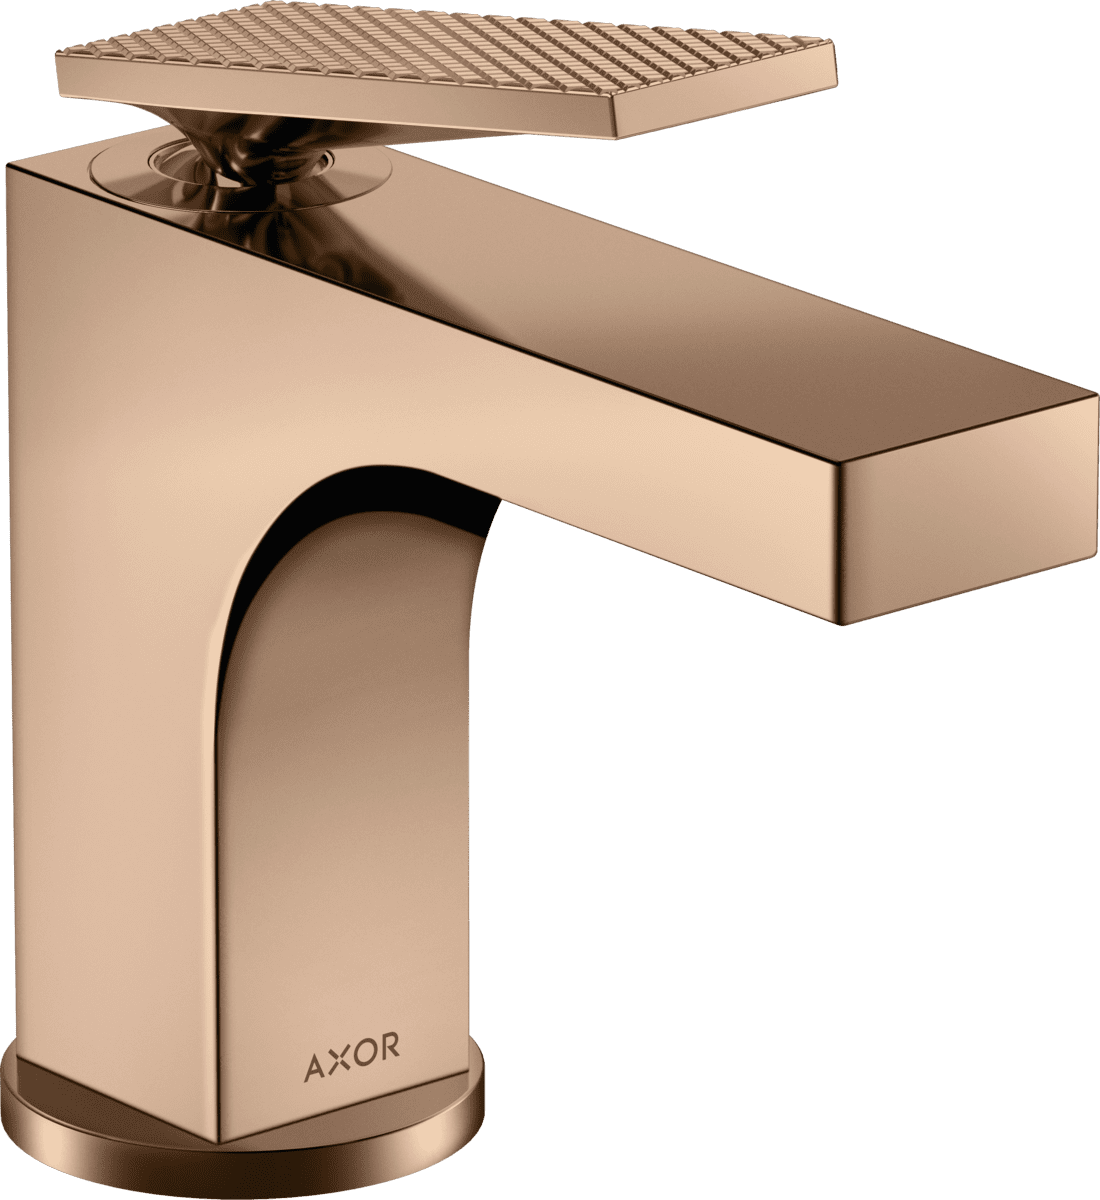 εικόνα του HANSGROHE AXOR Citterio Single lever basin mixer 90 with lever handle for hand wash basins with pop-up waste set - rhombic cut #39001300 - Polished Red Gold